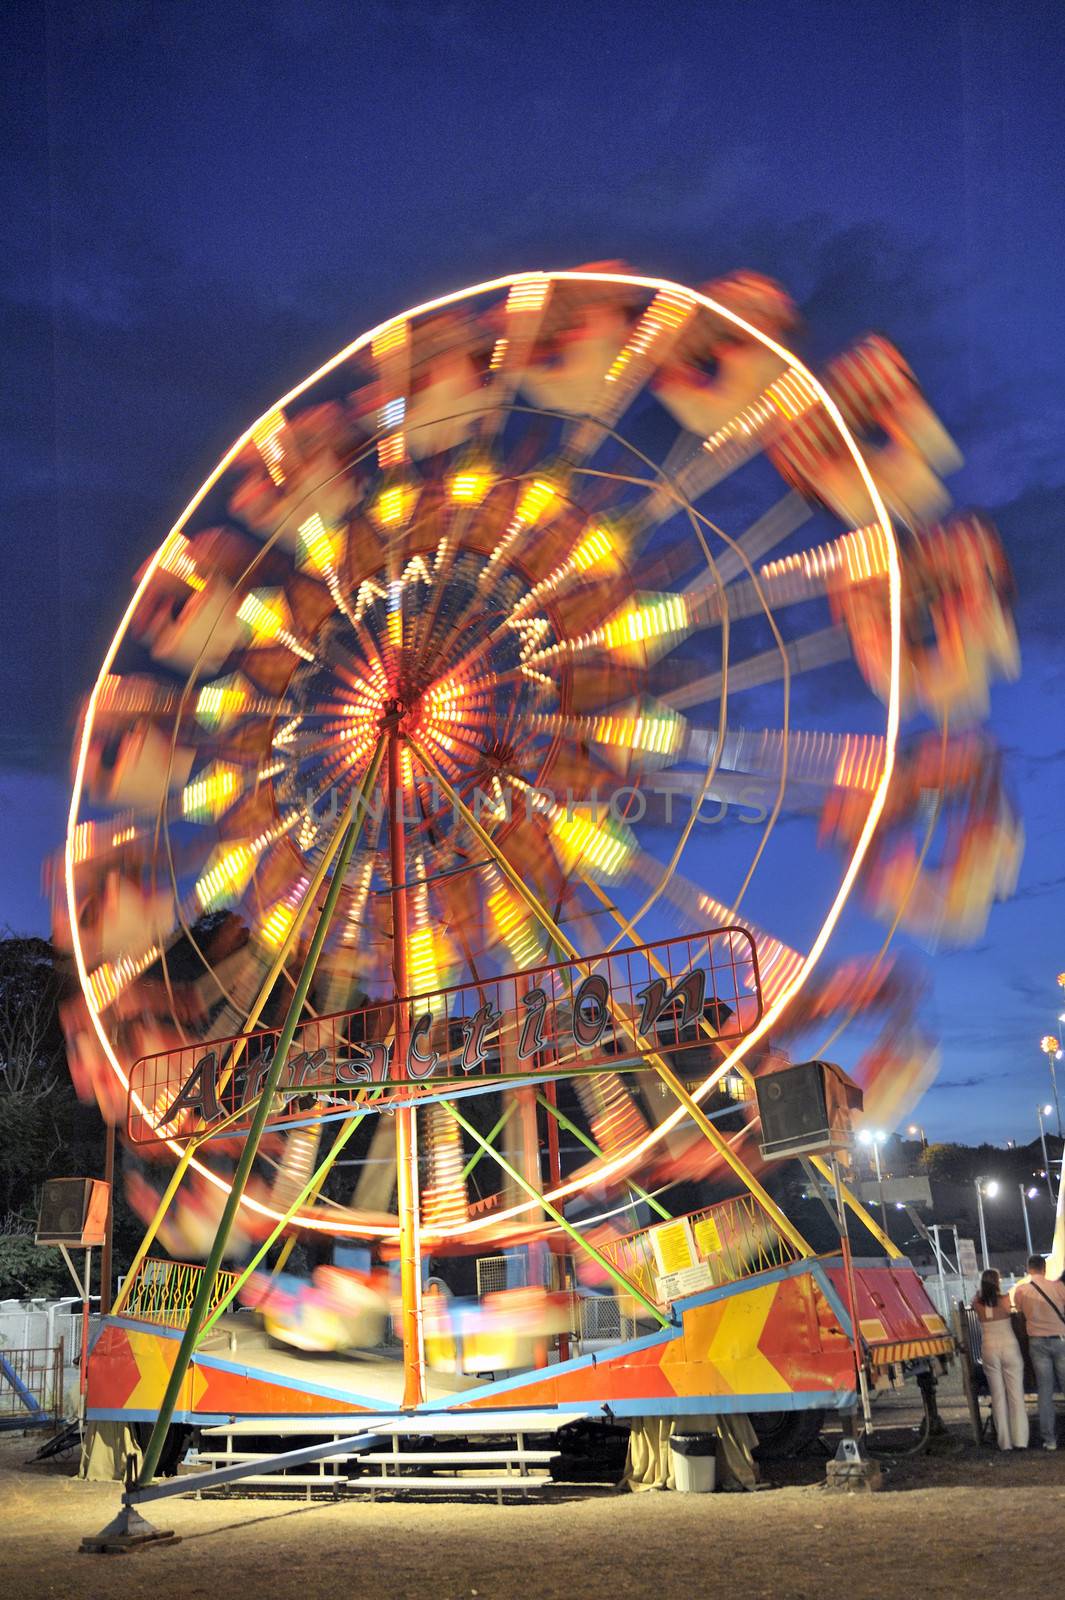 Ferris wheel in a summer night in Nessebar